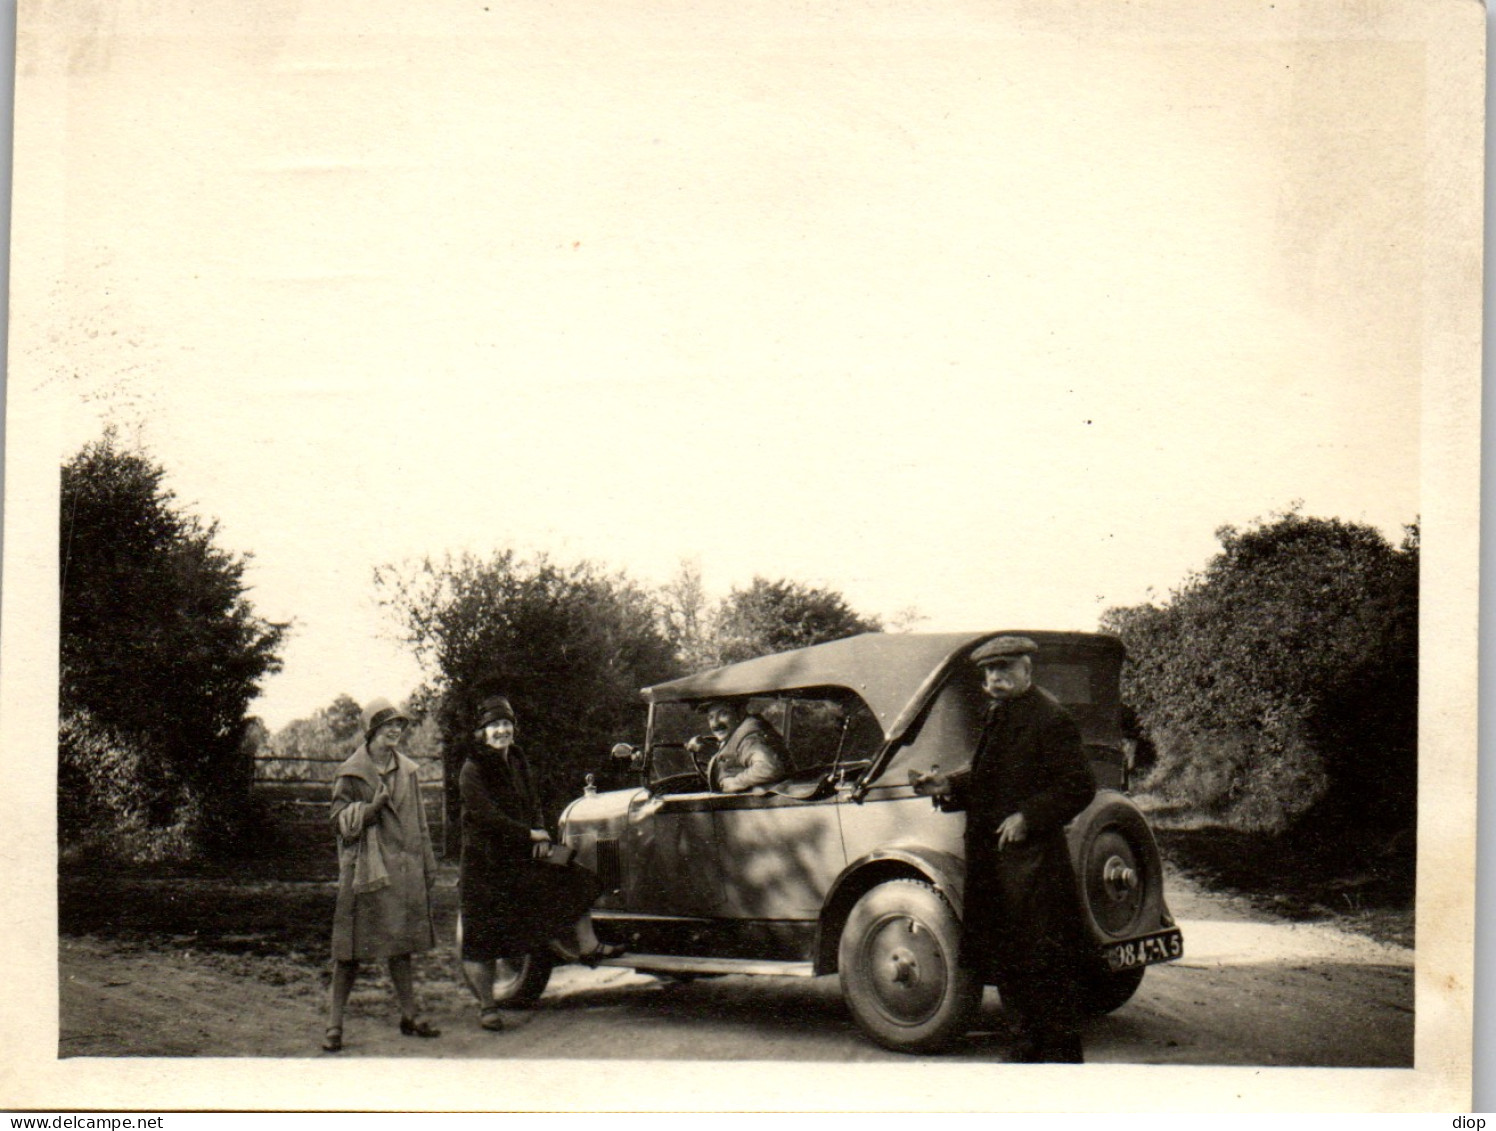 Photographie Photo Vintage Snapshot Amateur Automobile Voiture Auto Cabriolet - Automobile